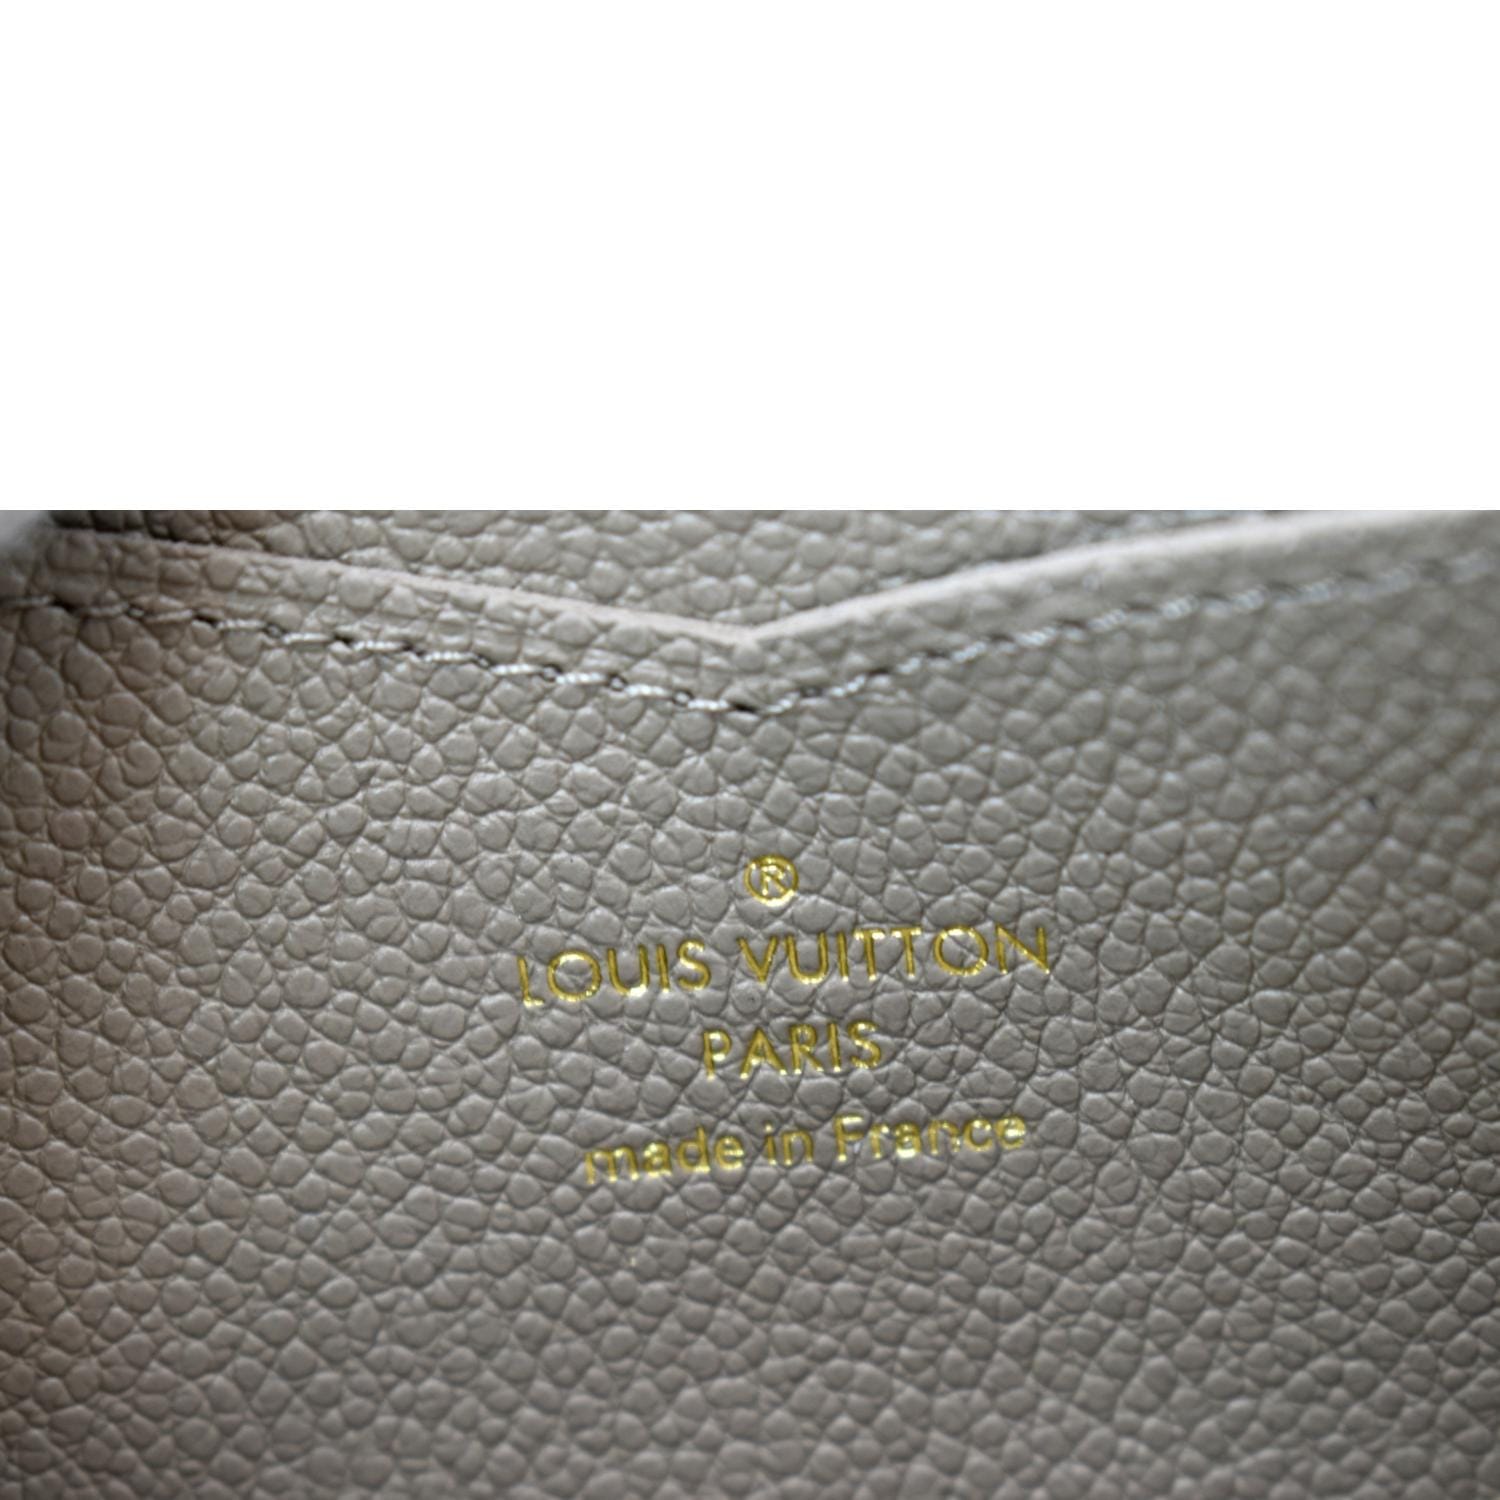 Louis Vuitton Zippy Coin Purse Black Monogram Empreinte